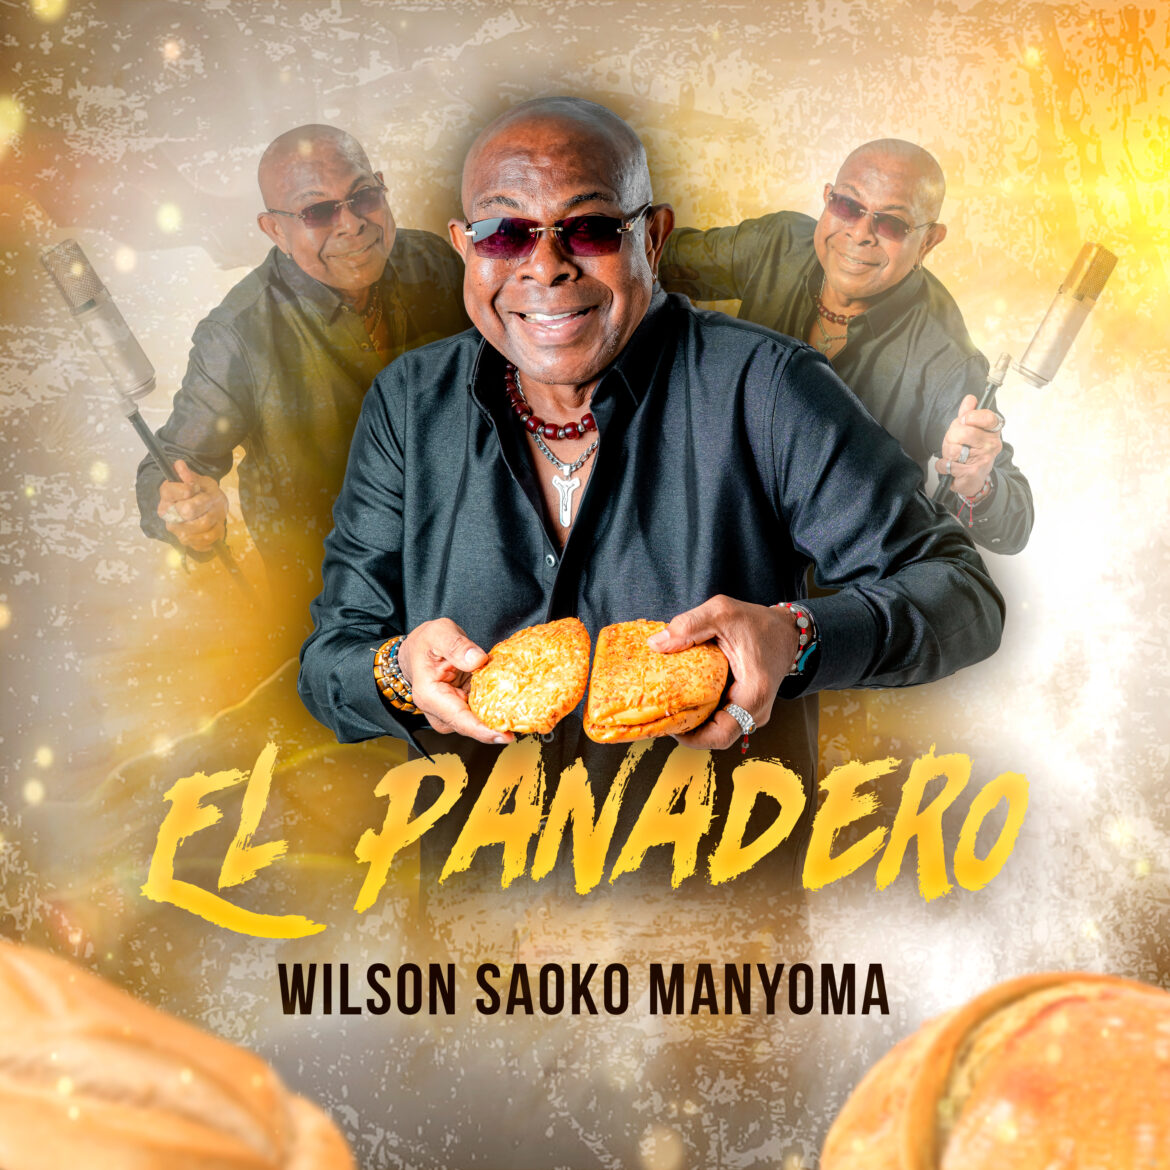 Wilson “Saoko” Manyoma presenta su nuevo sencillo “El Panadero”